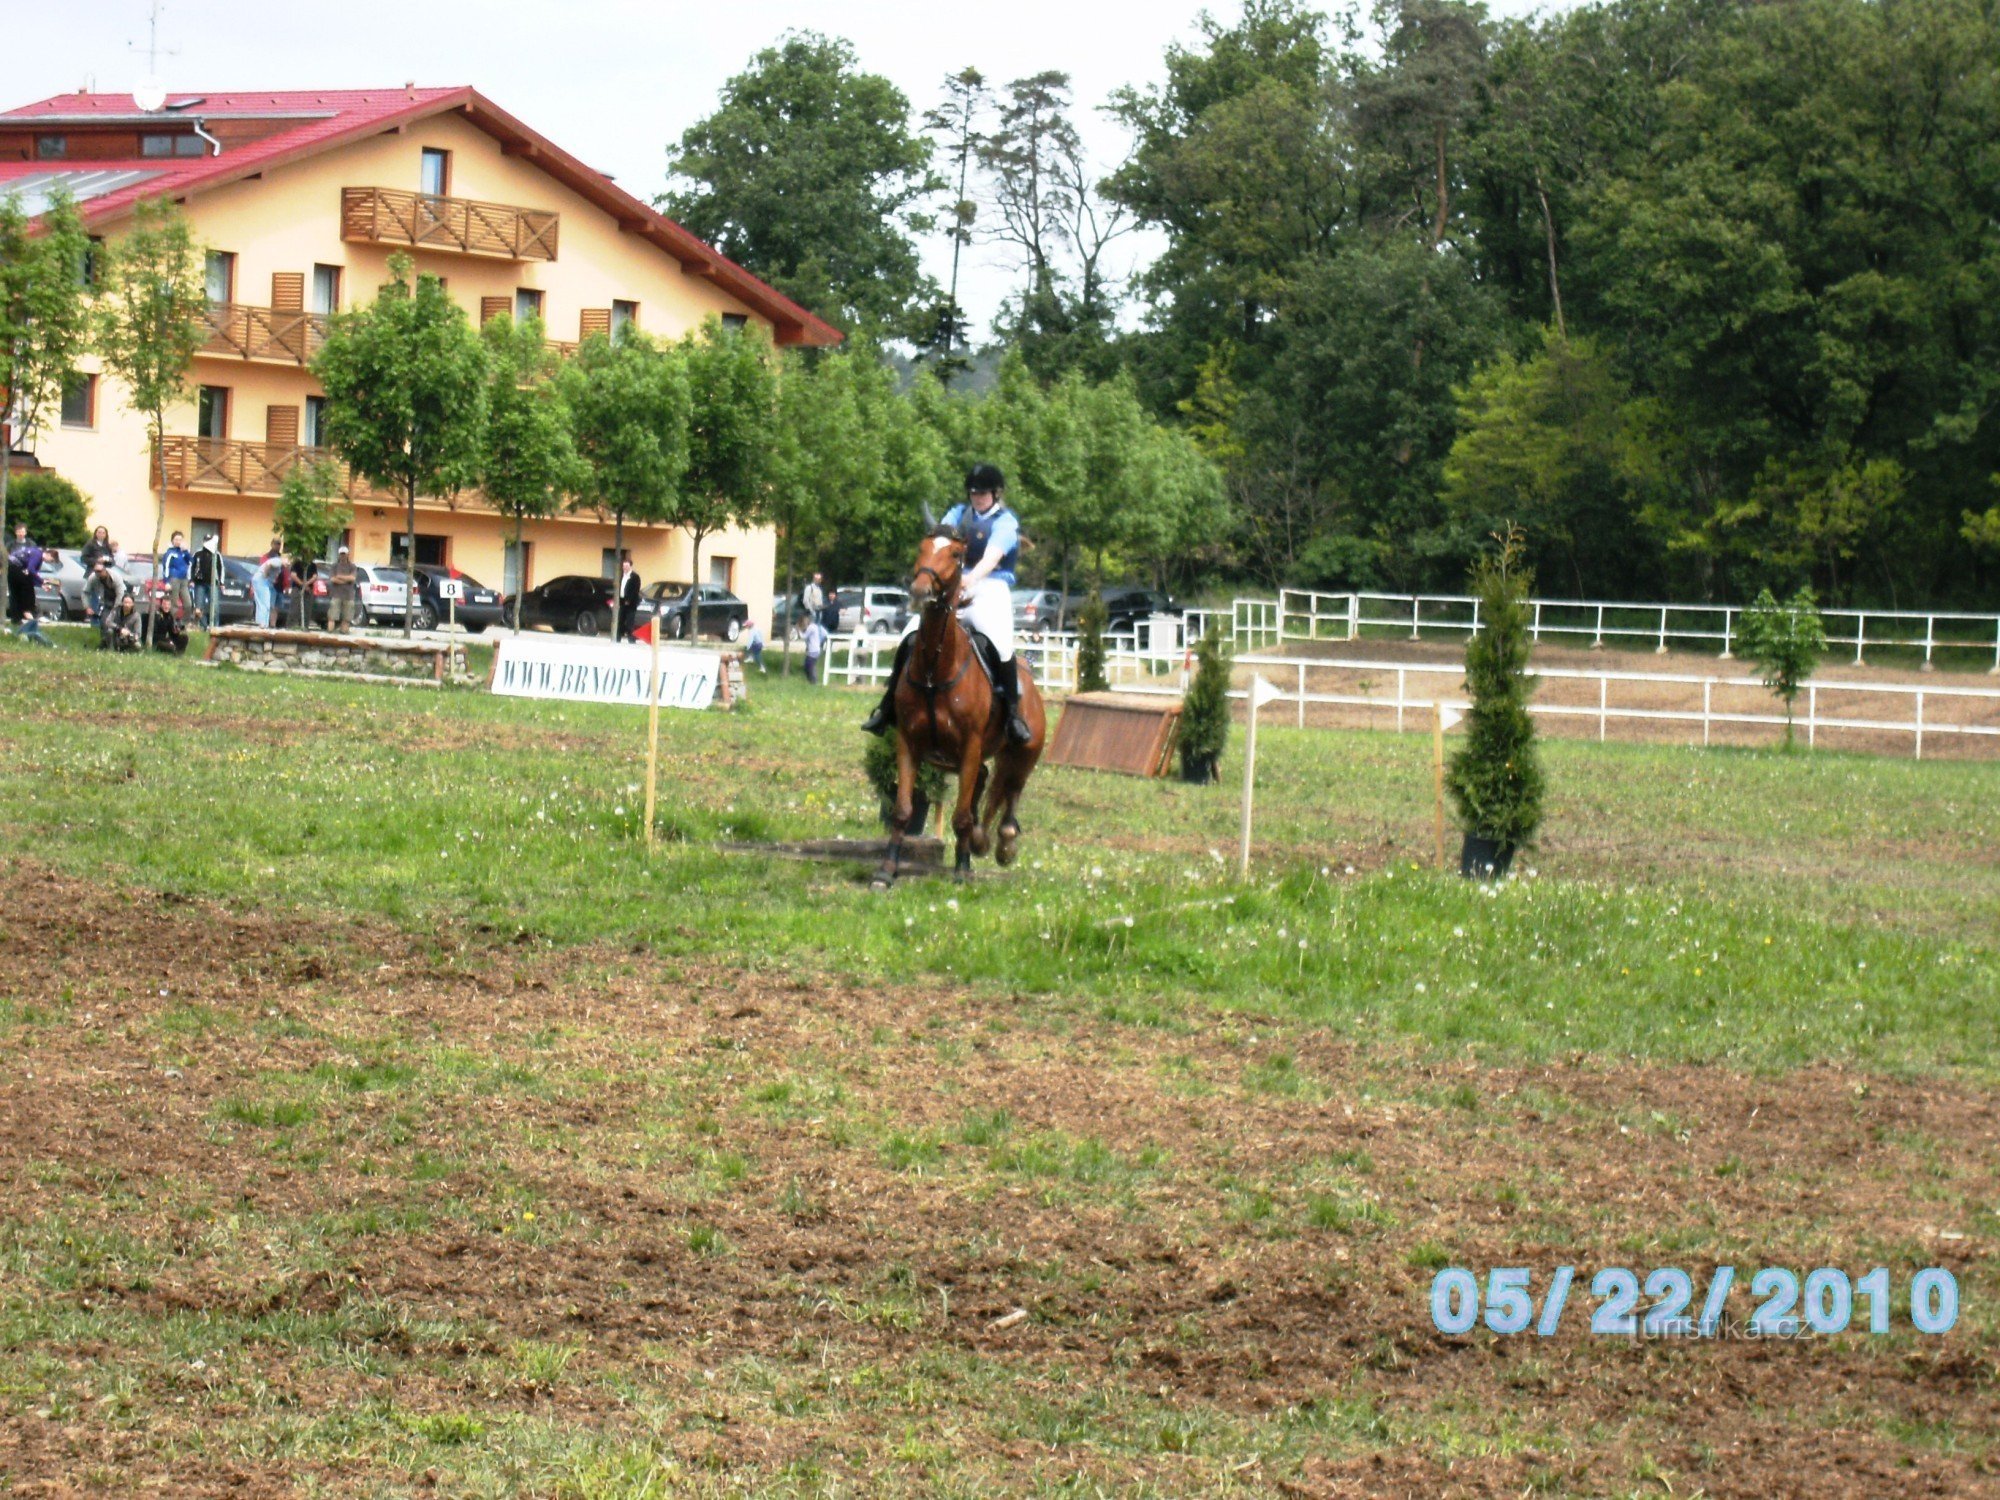 XIII. anno del Campionato Internazionale della Polizia della Repubblica Ceca di equitazione nel complesso di Panská lícha